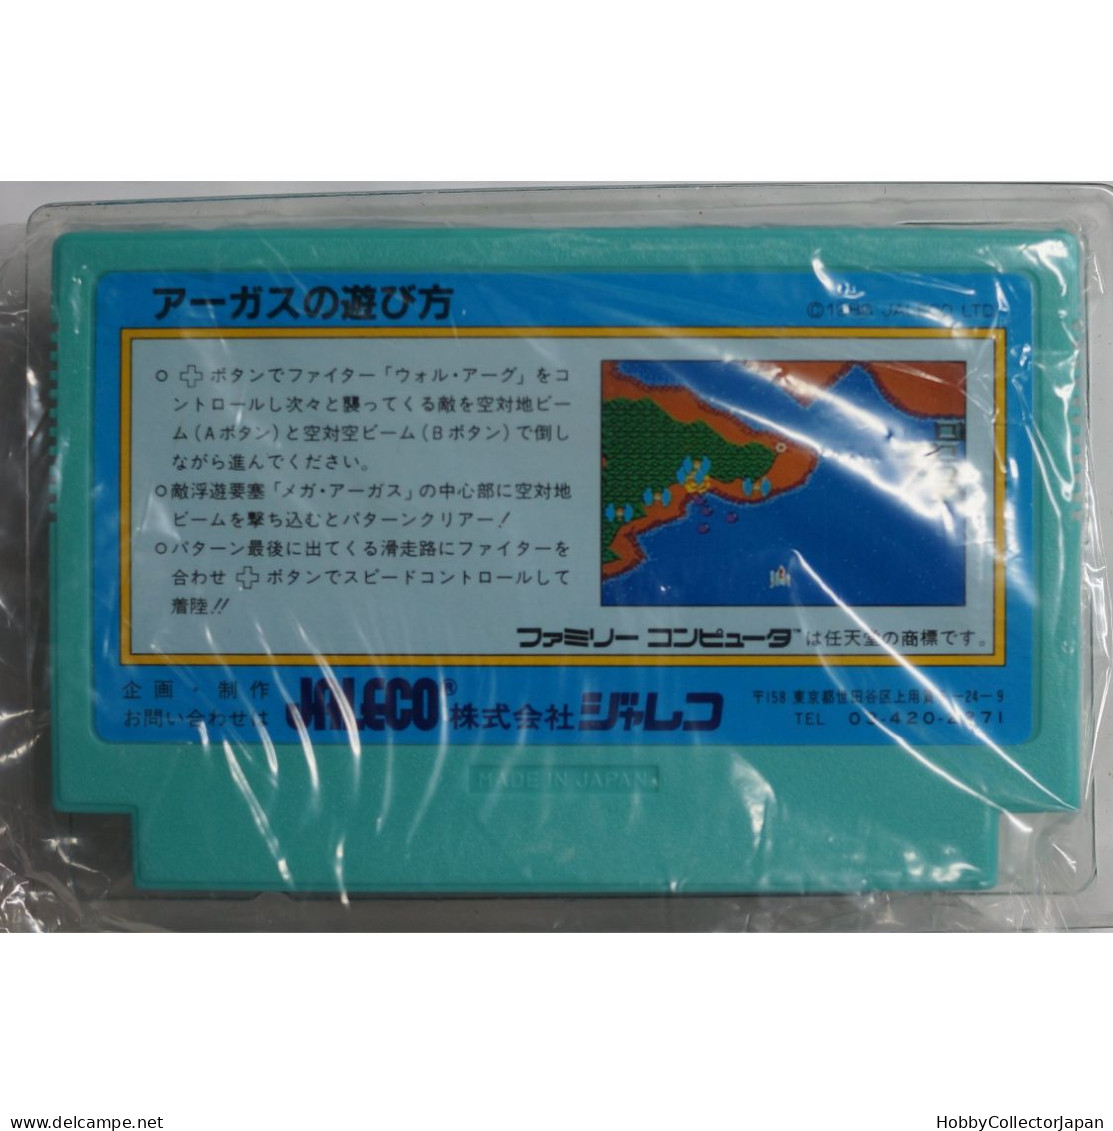 ARGUS JF-07 4907859101079 Famicom Game - Famicom